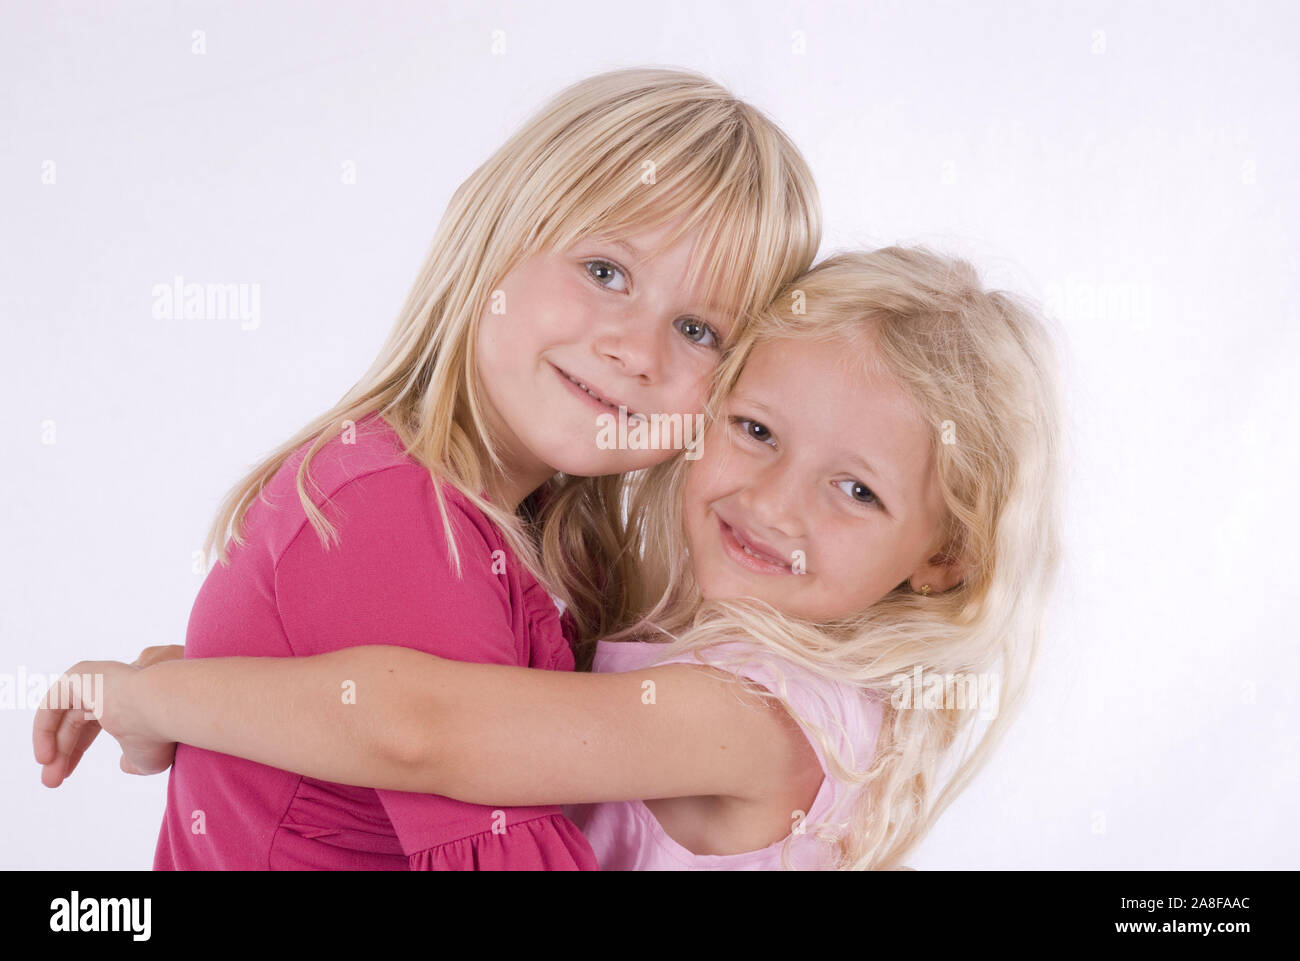 Zwei, Mädchen, Freunde, 6 und 7 Jahre alt, umarmen sich herzlich, signor:Sì Foto Stock